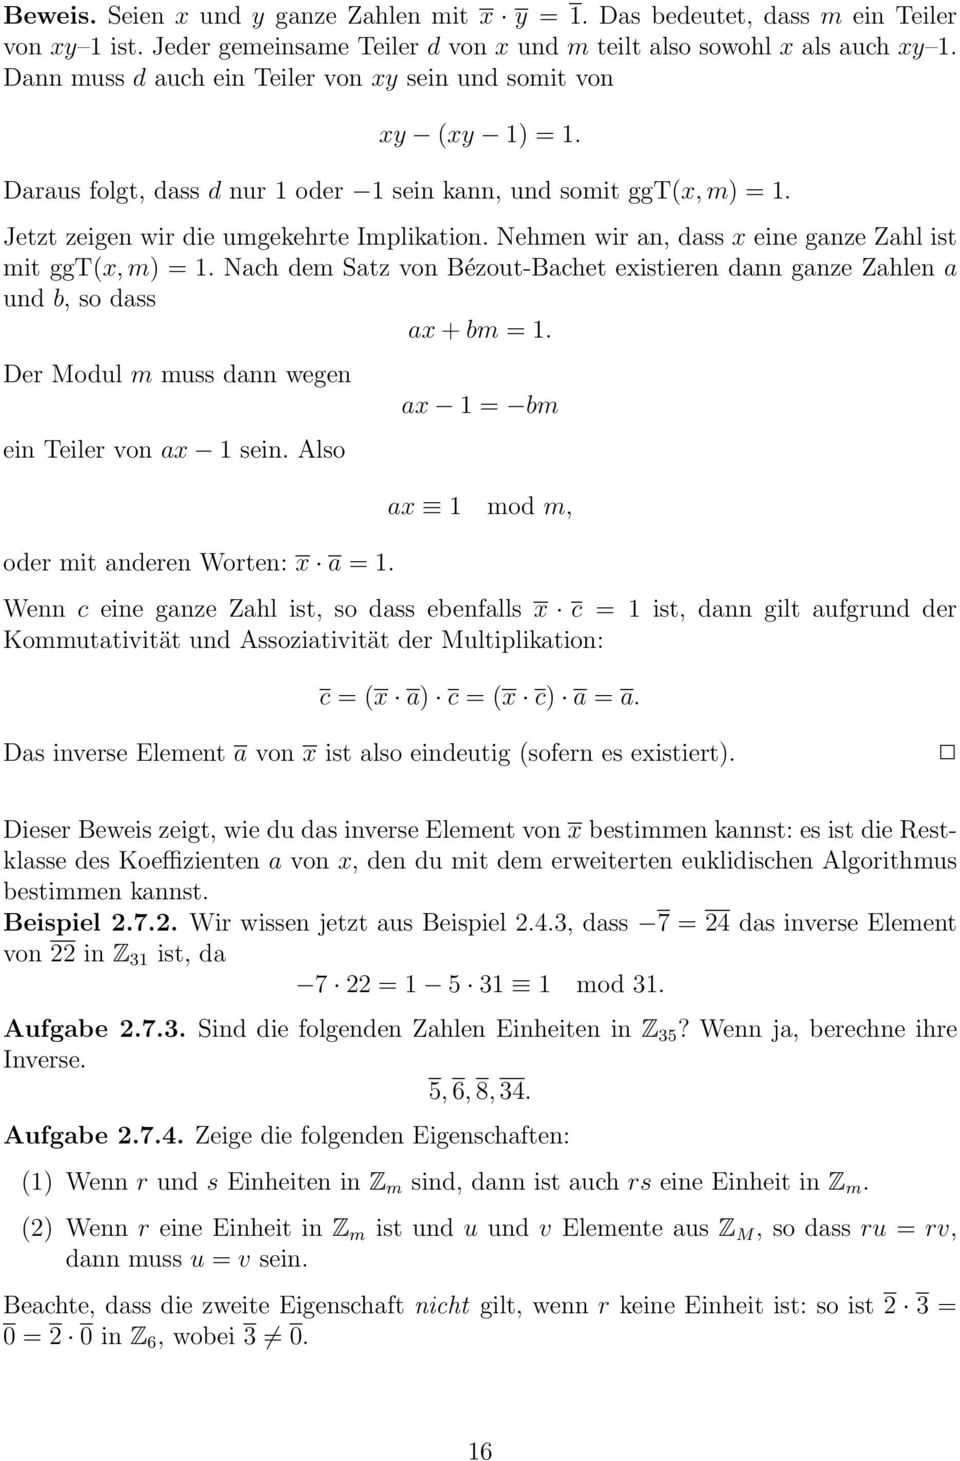 Nehmen wir an, dass x eine ganze Zahl ist mit ggt(x, m) = 1. Nach dem Satz von Bézout-Bachet existieren dann ganze Zahlen a und b, so dass ax + bm = 1.